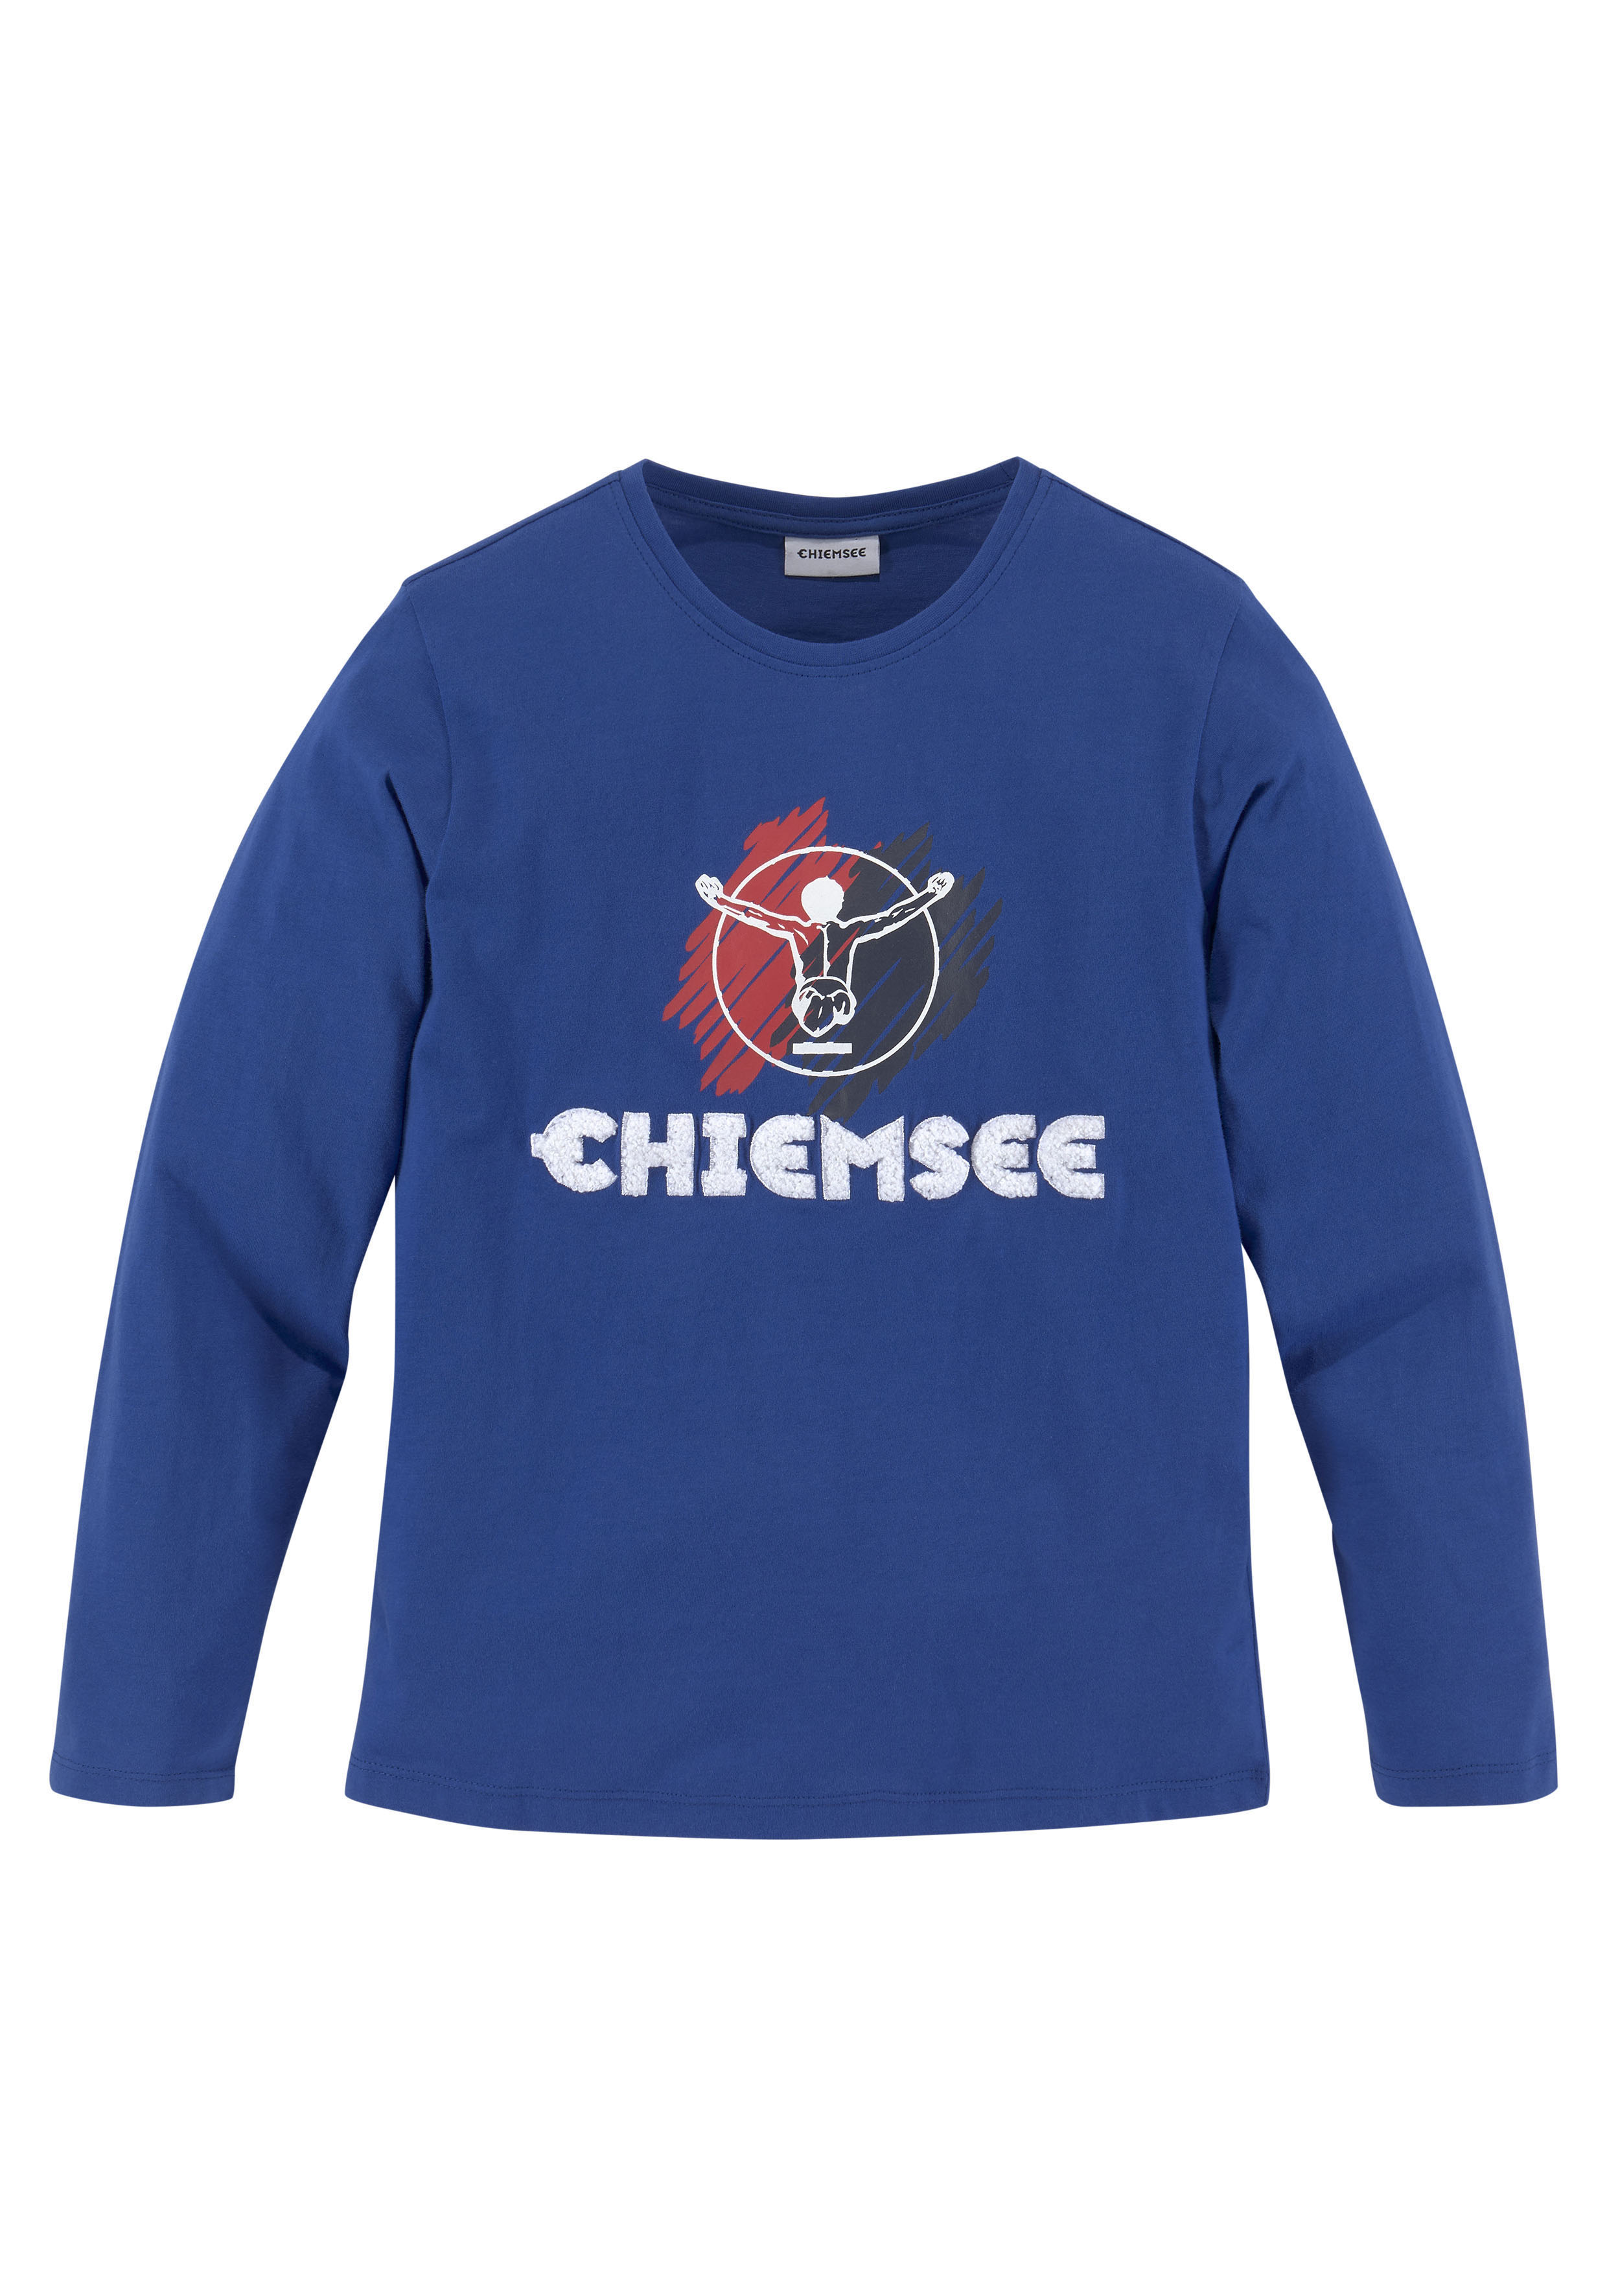 Chiemsee - günstige Mode shoppen online